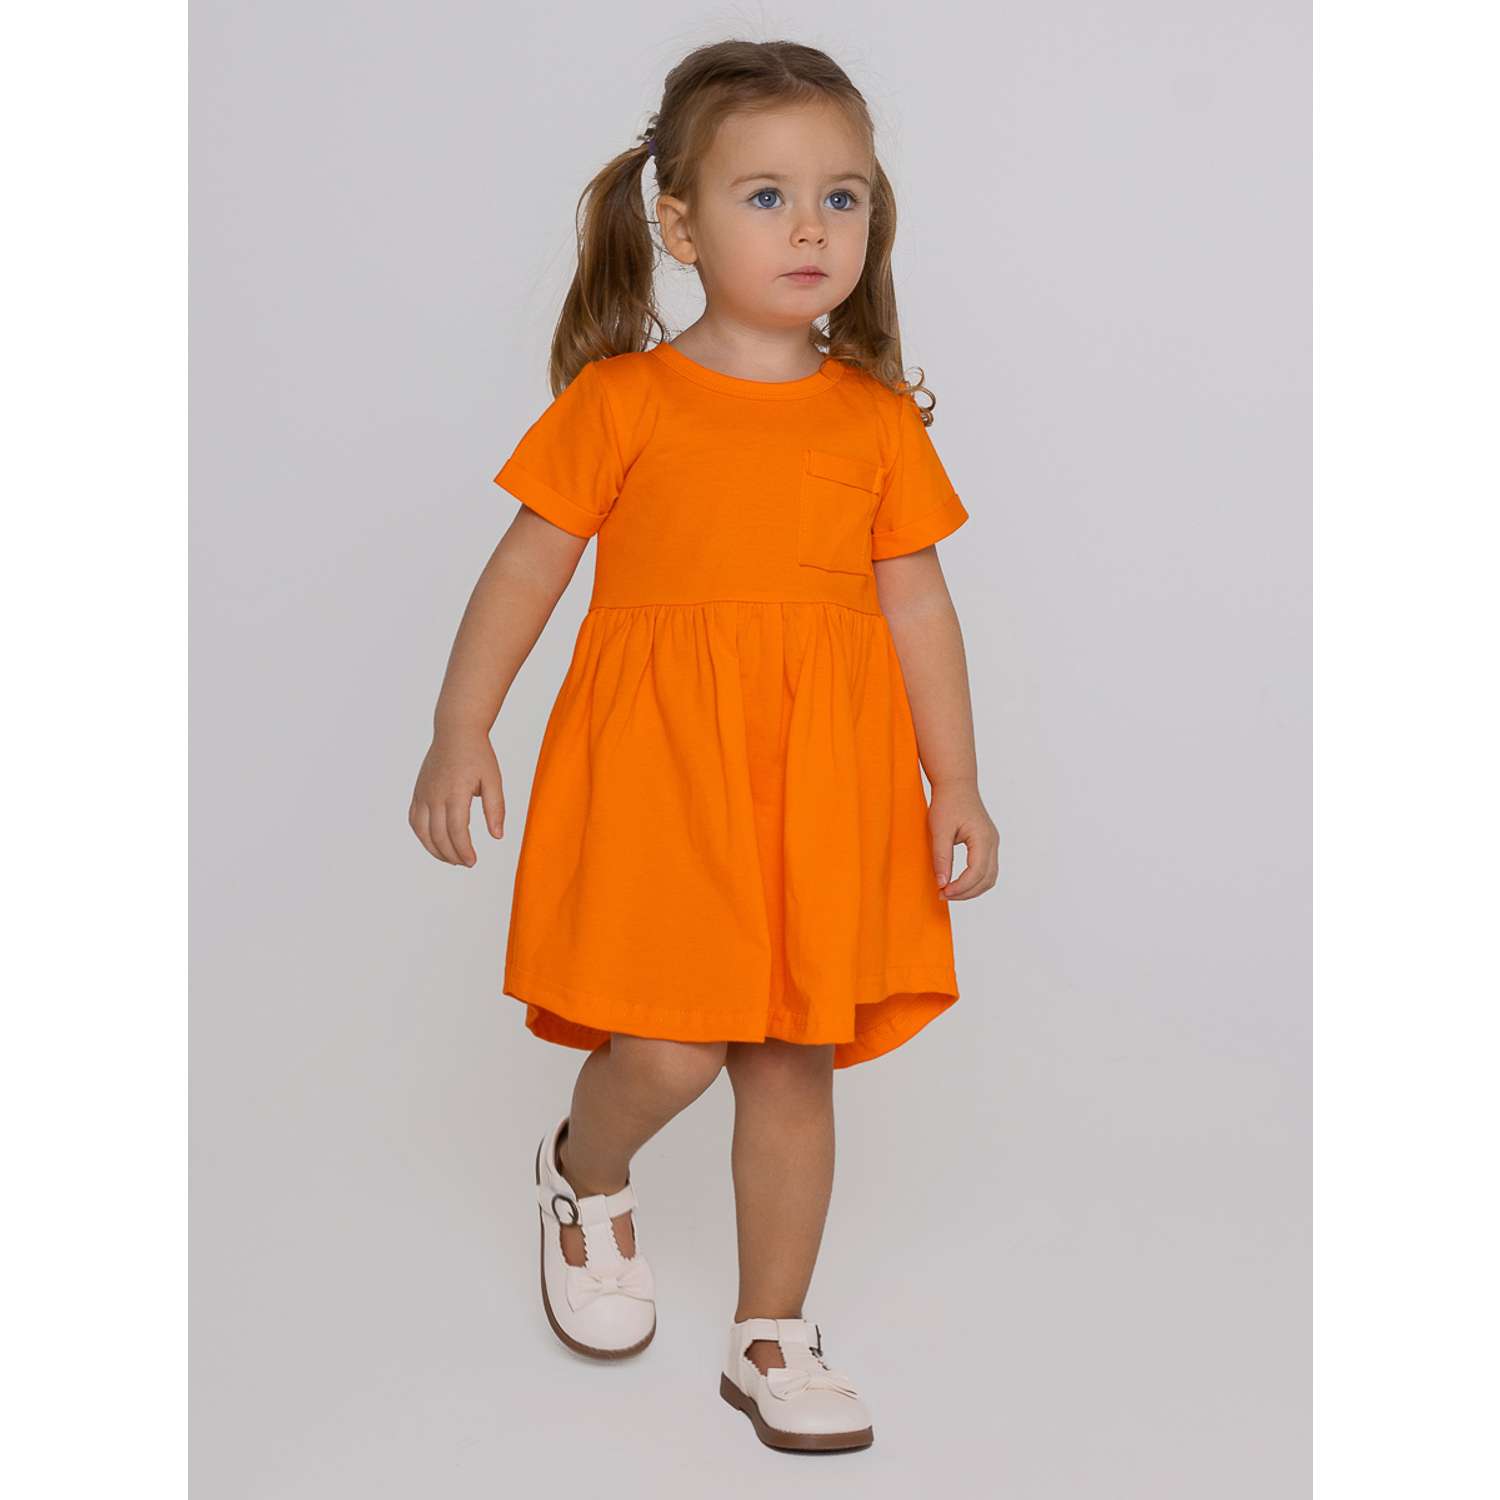 Платье Ивбэби 10003/оранжевый - фото 1